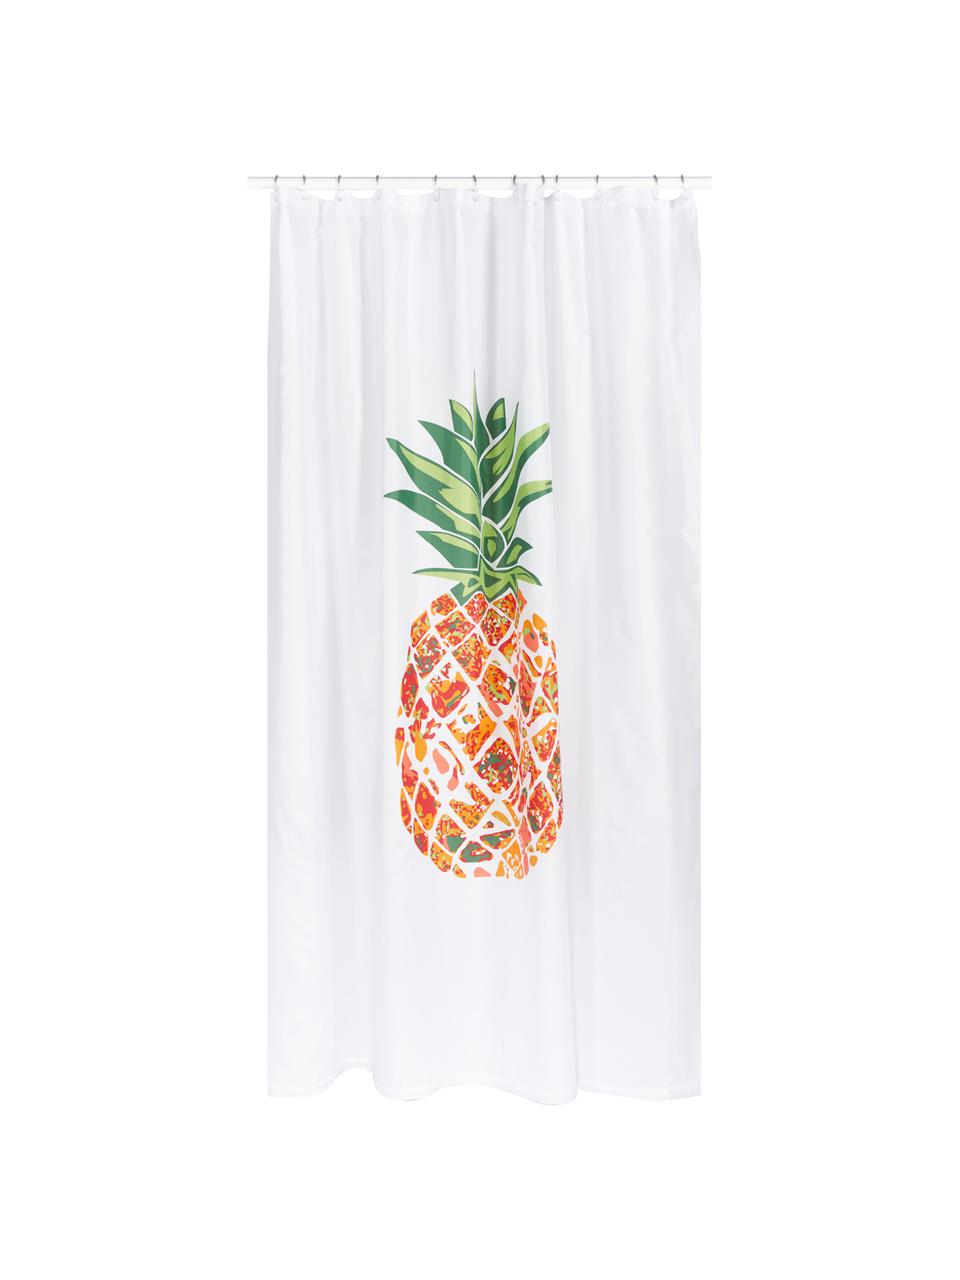 Rideau de douche à motif ananas Pineapple, Blanc, vert, orange, rouge